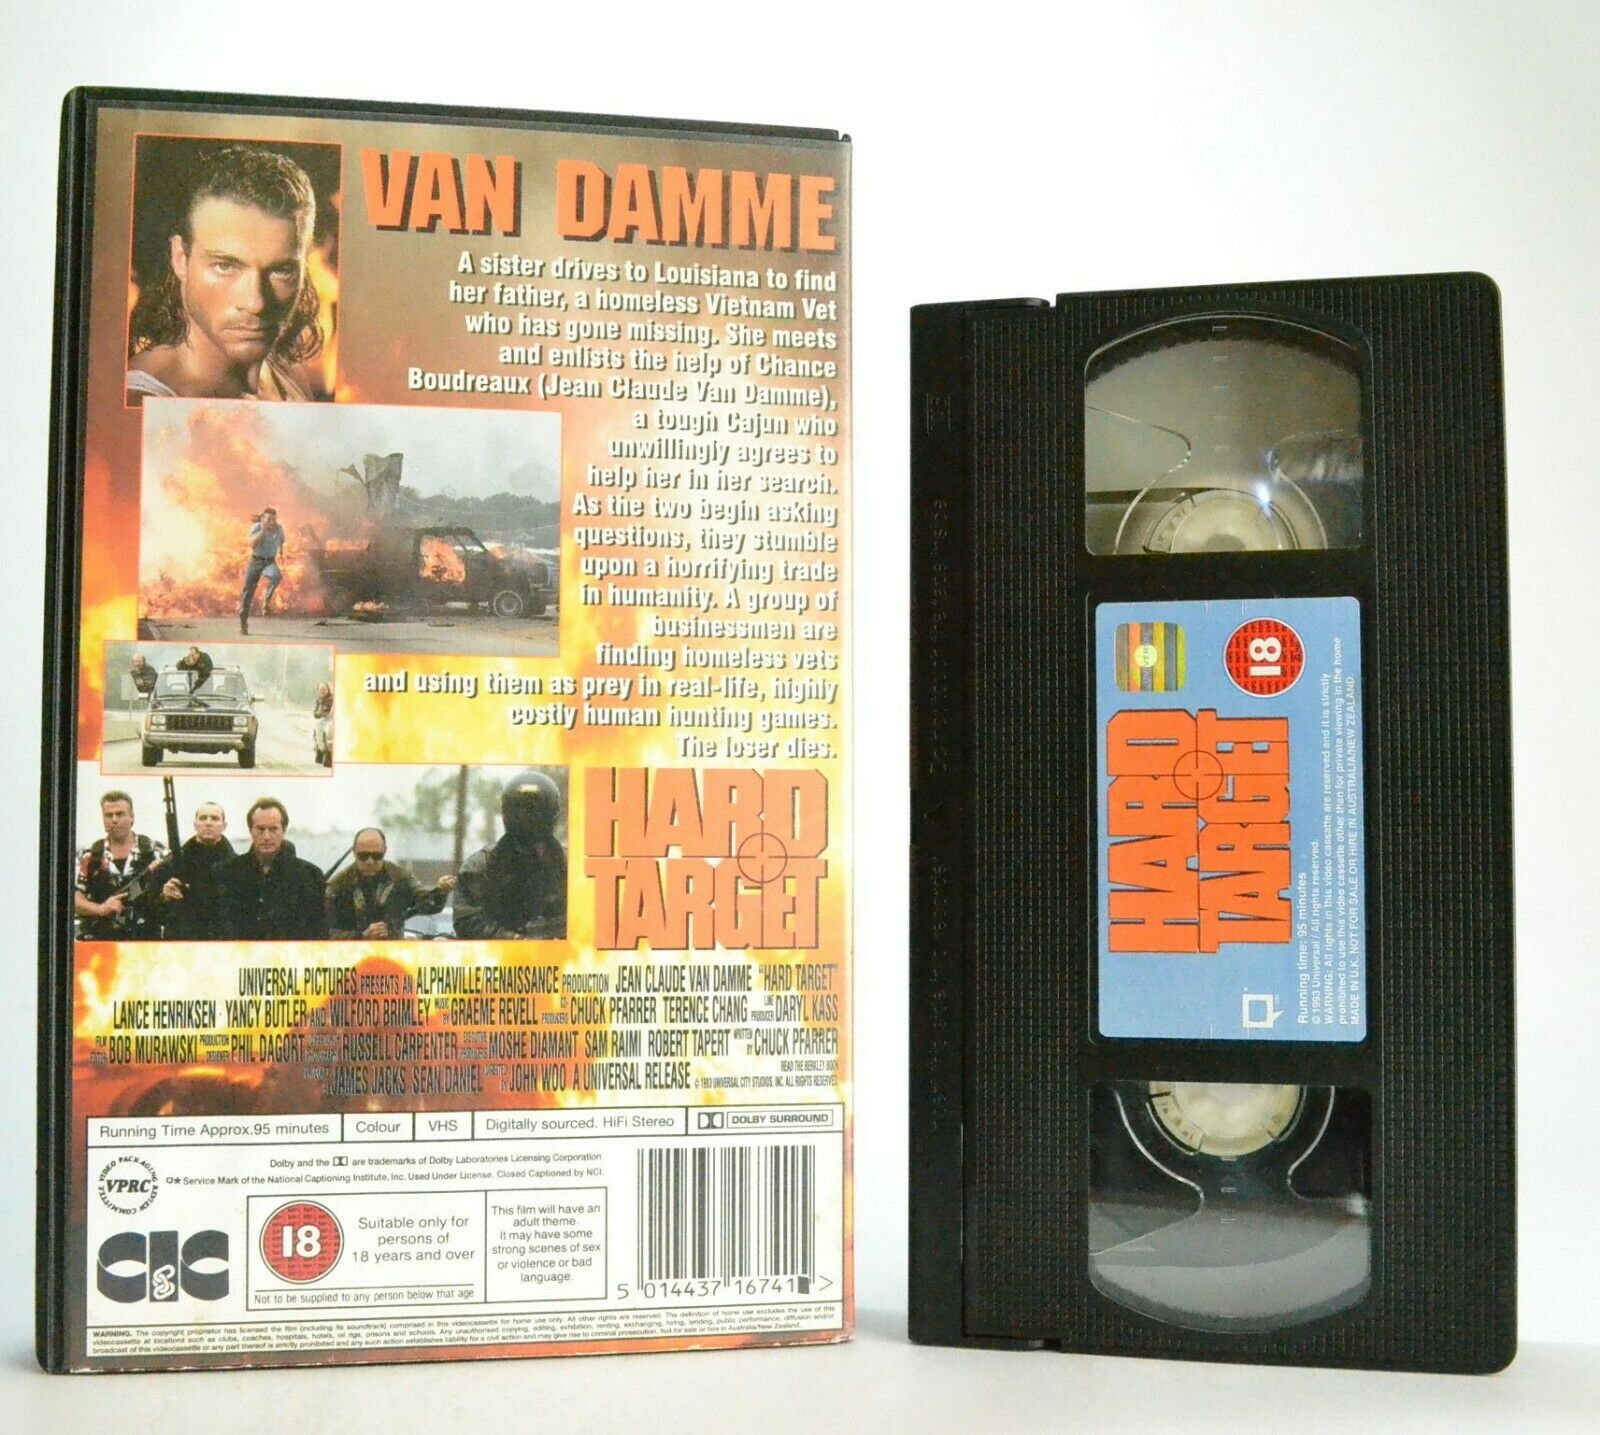 Hard Target (1993); [John Woo] Action - Large Box - Van Damme - Pal VHS-